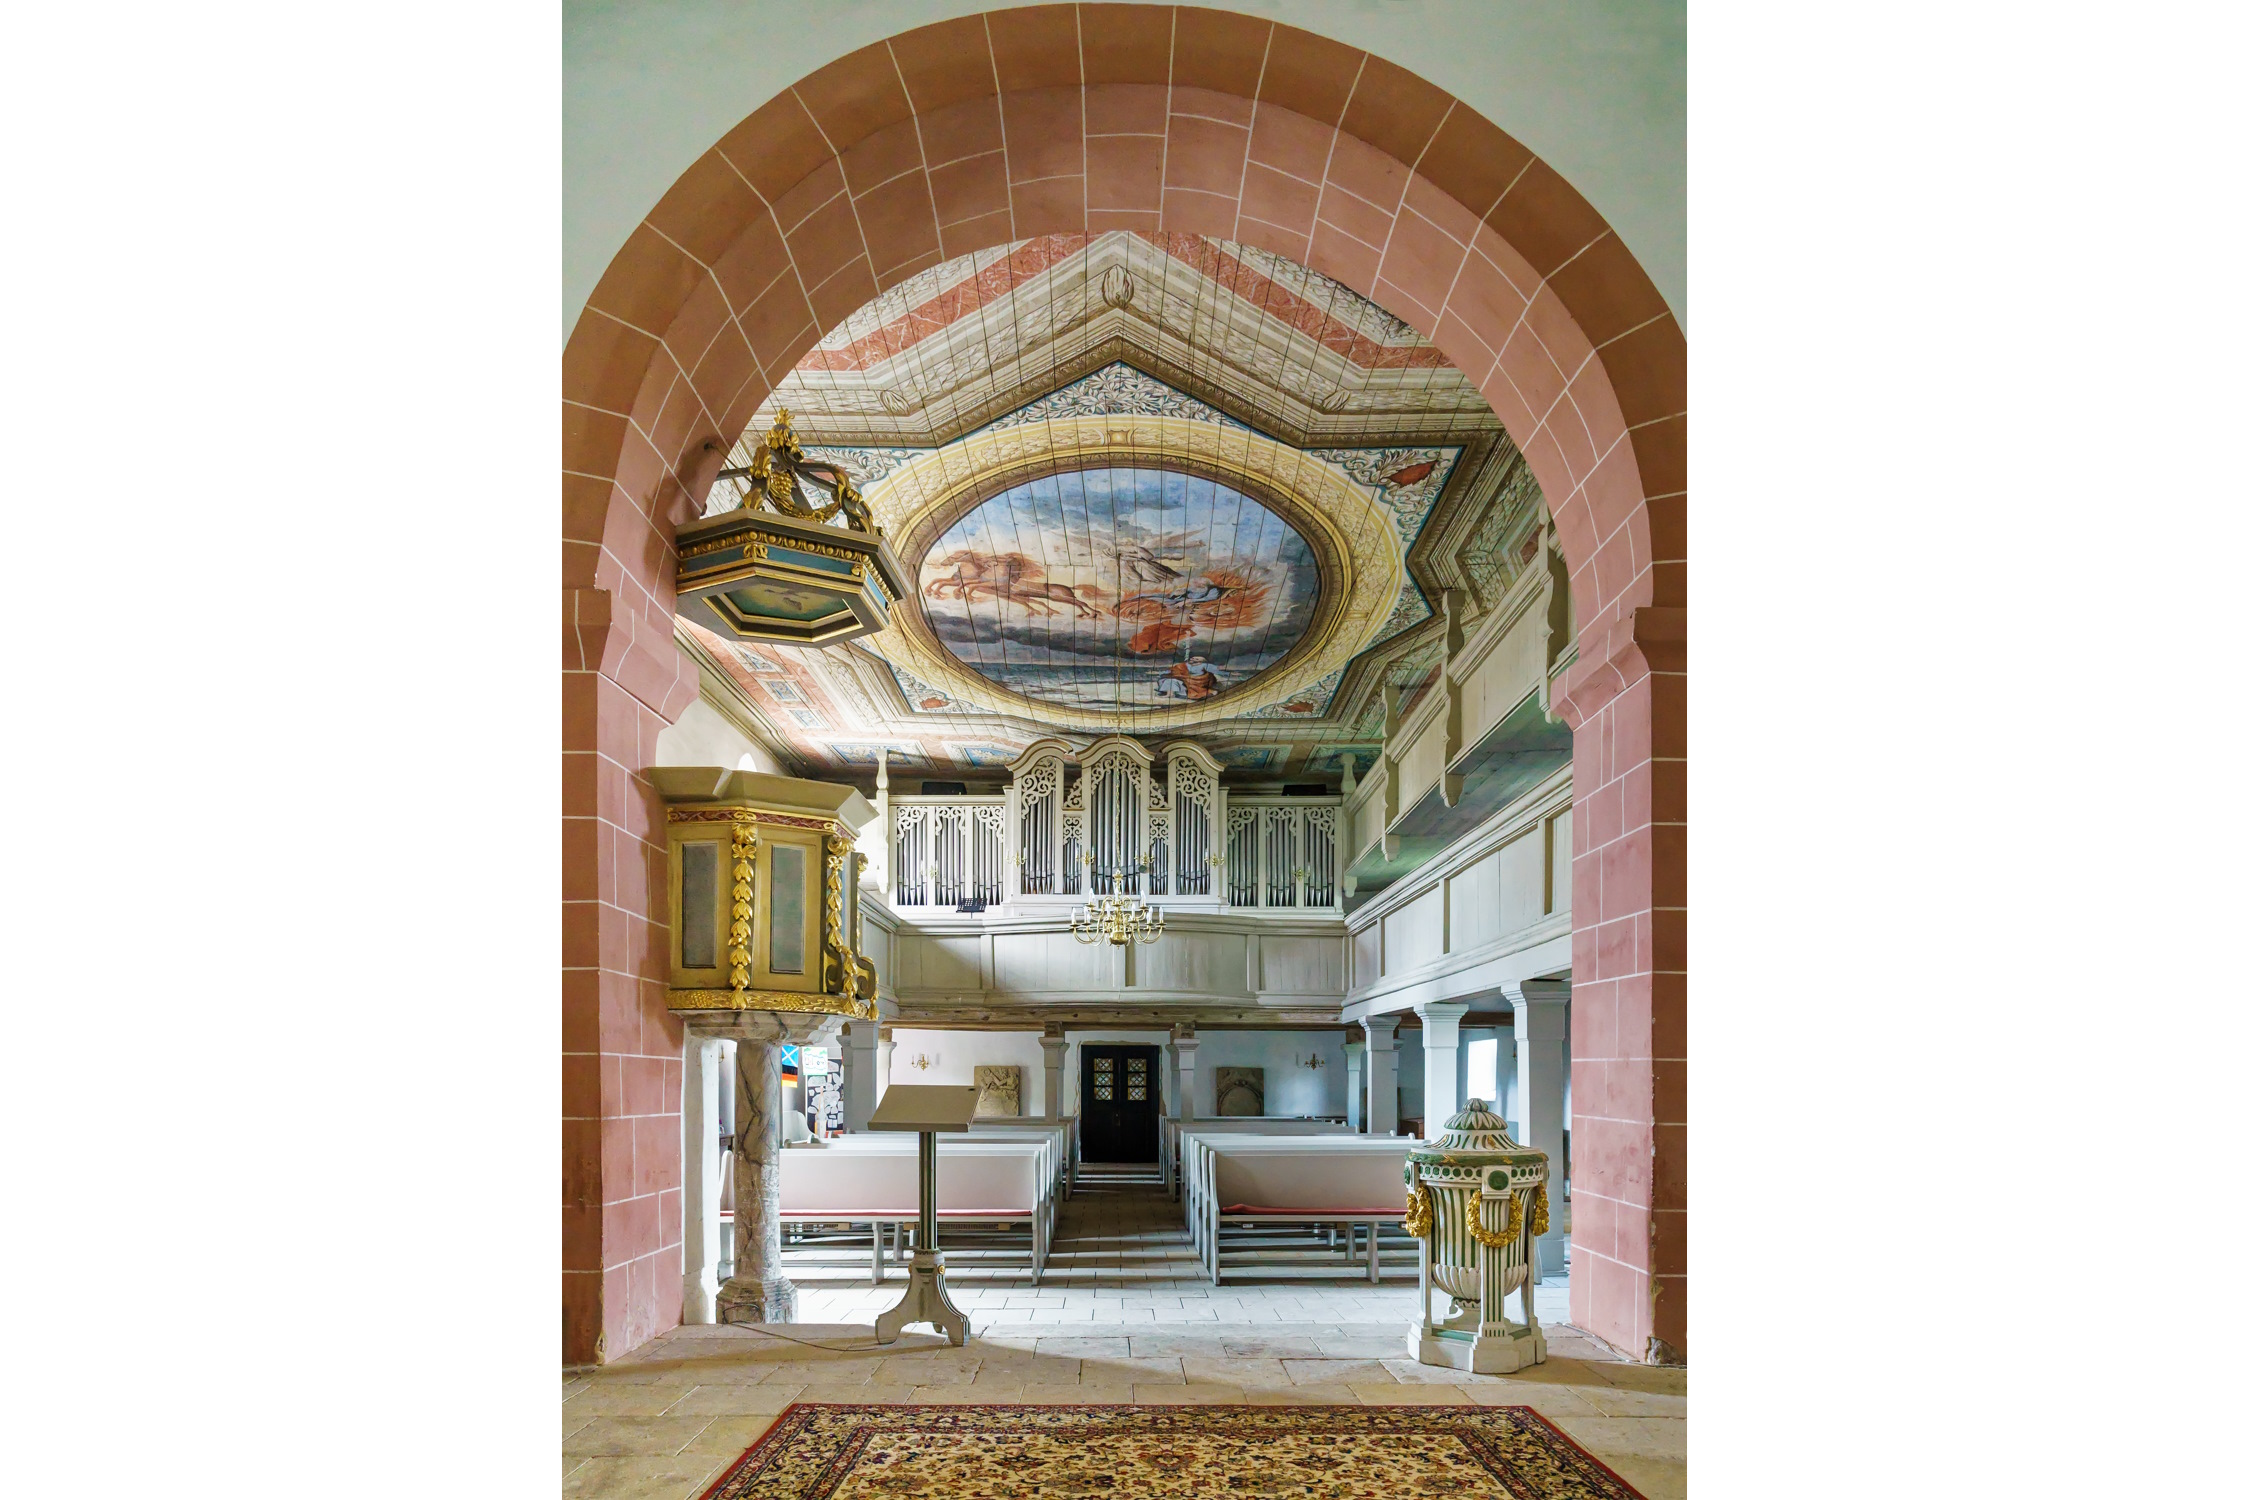 Ein Blick vom Altar zu Kanzel, Deckengemälde, Empore mit Orgel sowie Taufbecken. Foto: Radler59, CC BY-SA 4.0, https://commons.wikimedia.org/w/index.php?curid=137880774 